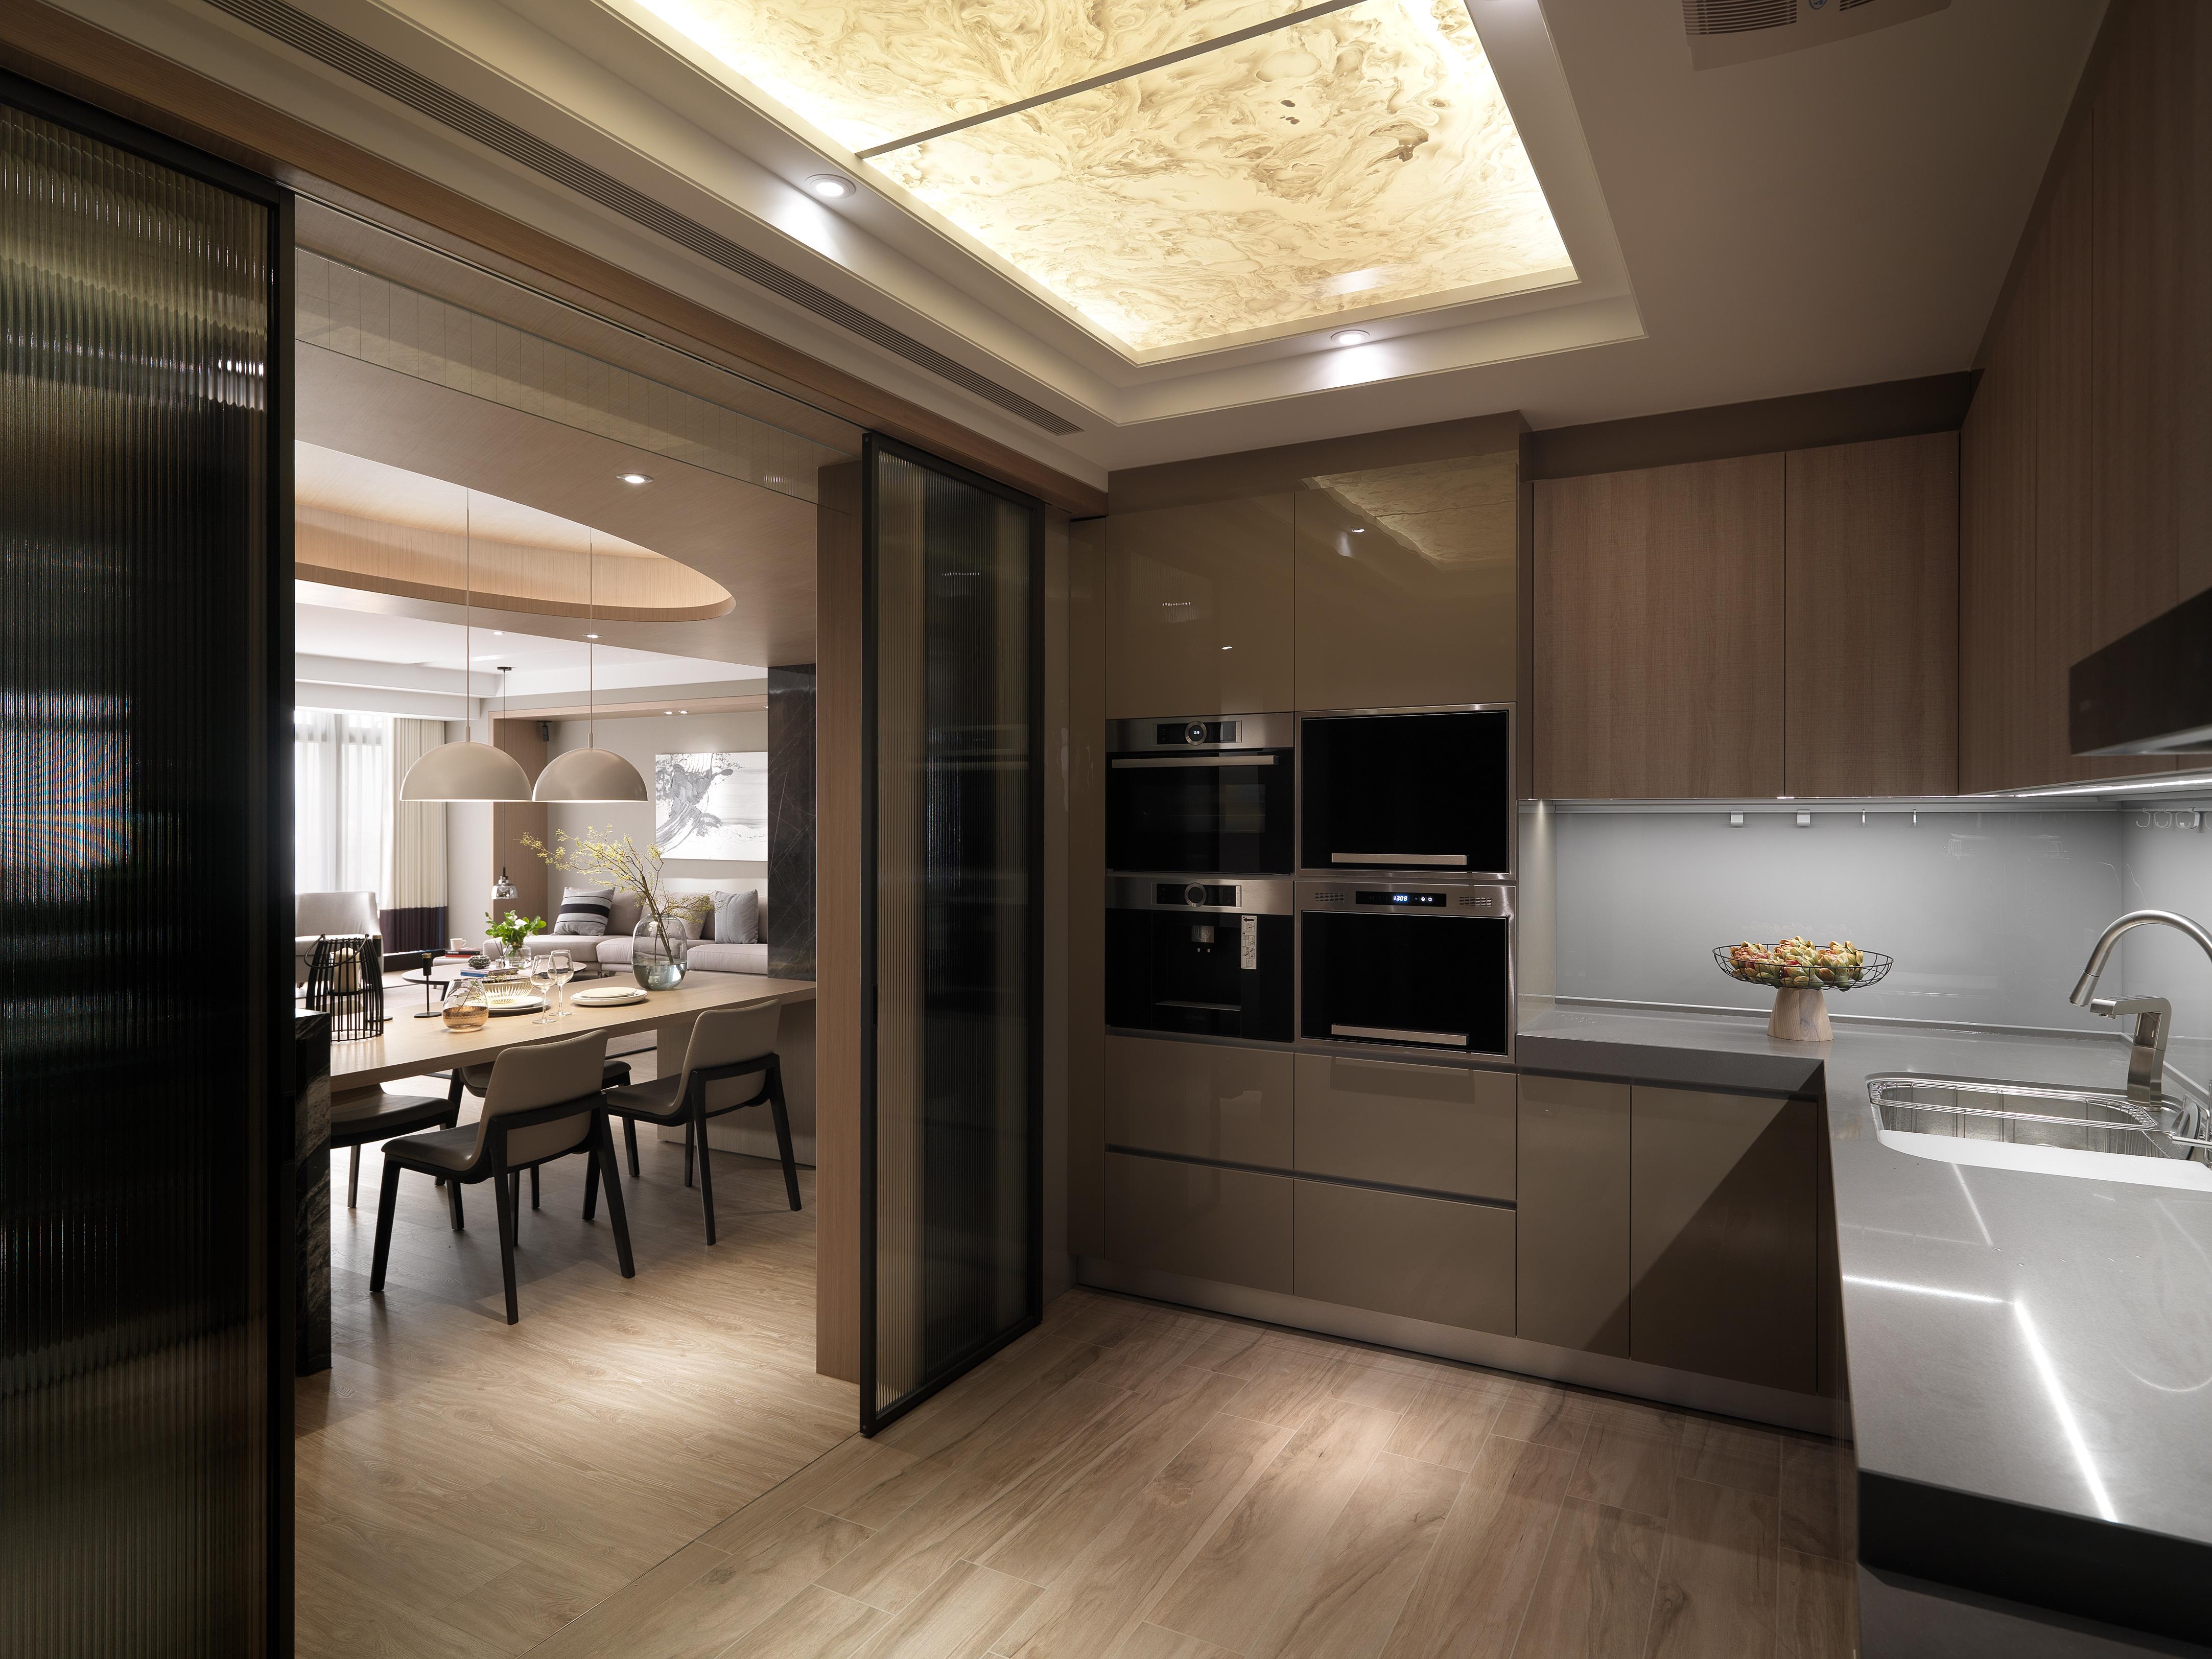 现代厨房壁橱效果图-上海装潢网